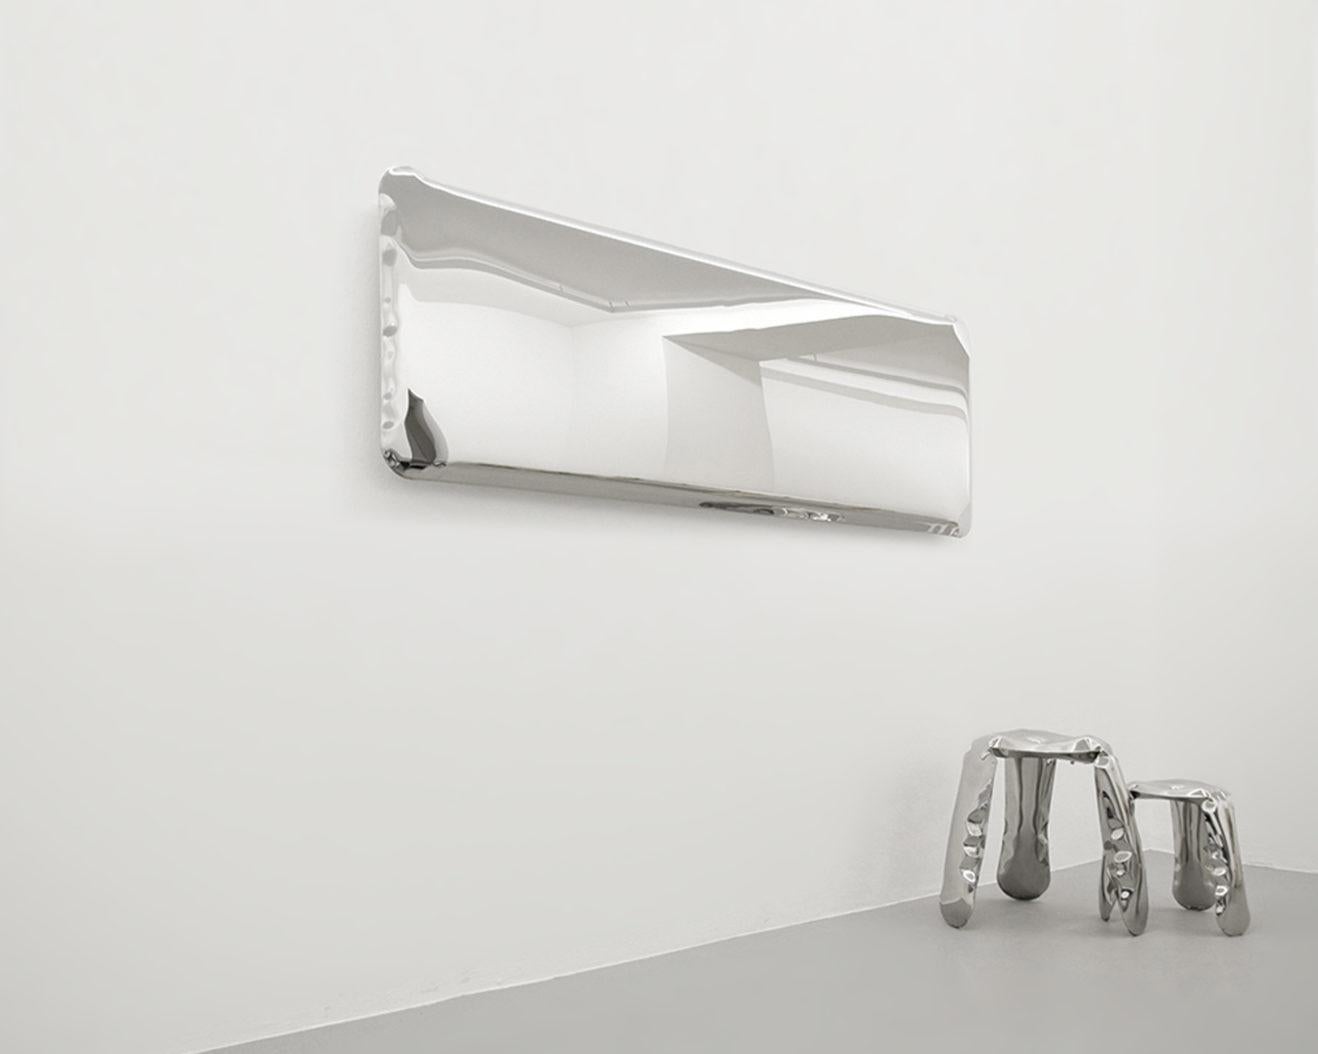 Organic Modern Tafla Mirror Q3 by Zieta Prozessdesign in Stainless Steel